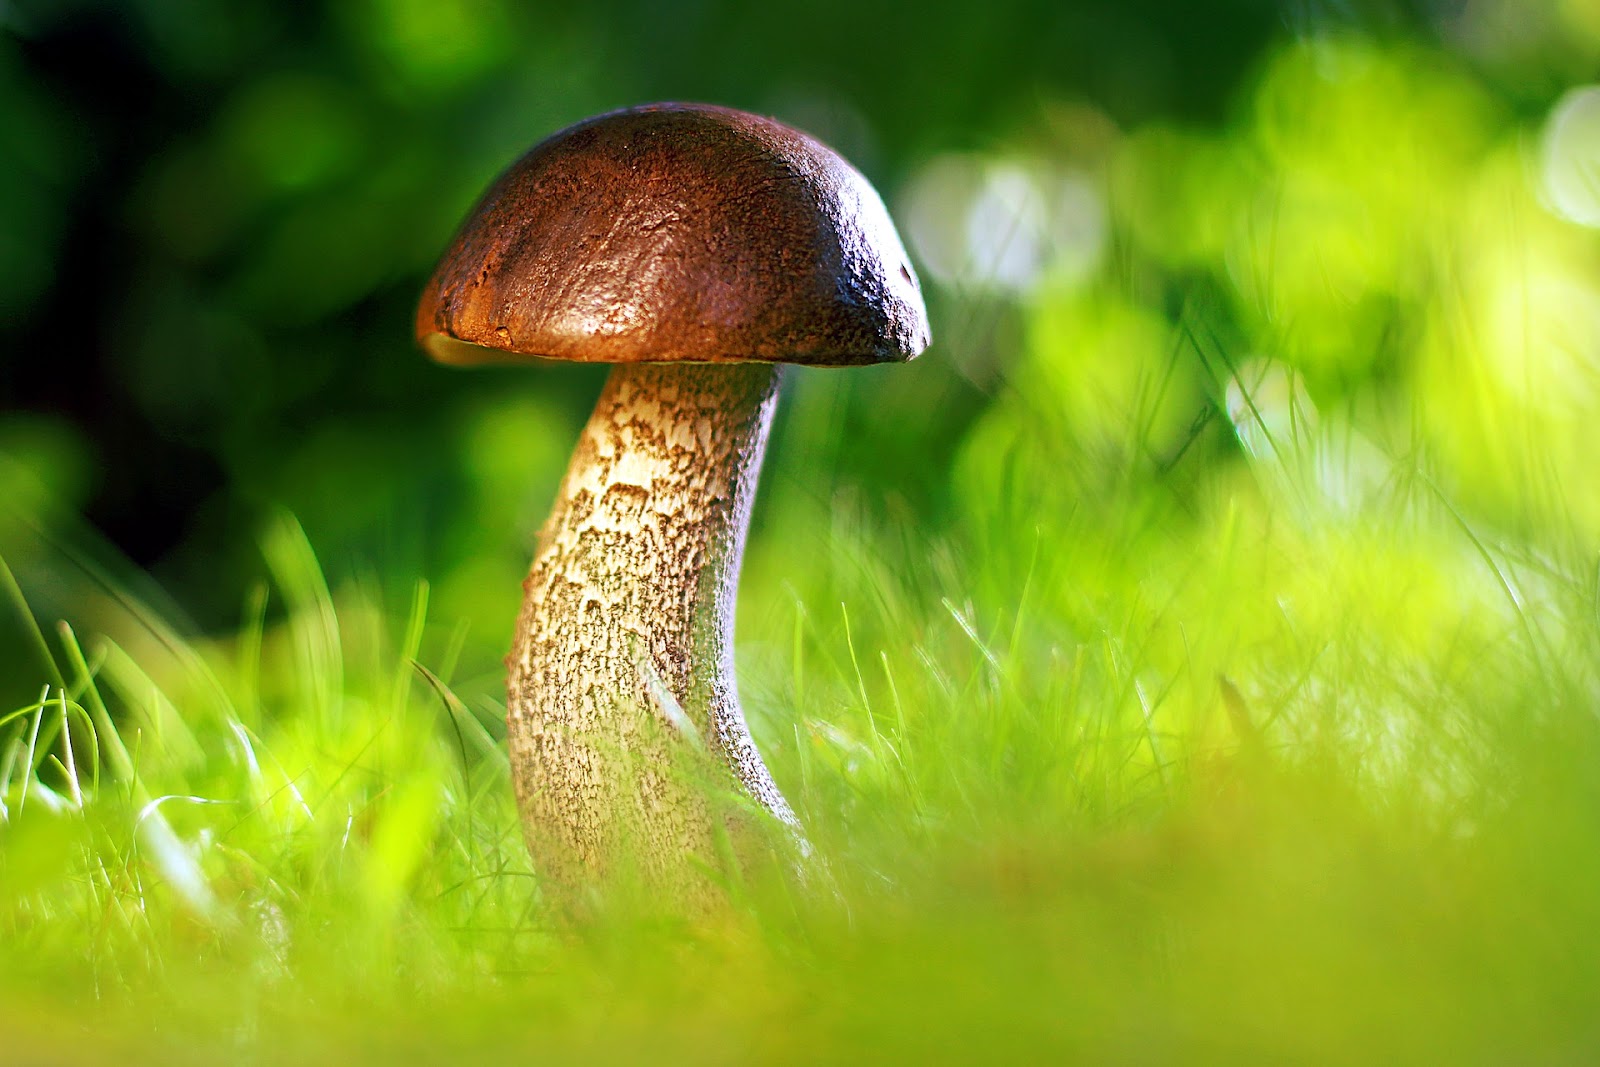 Mushroom and grass